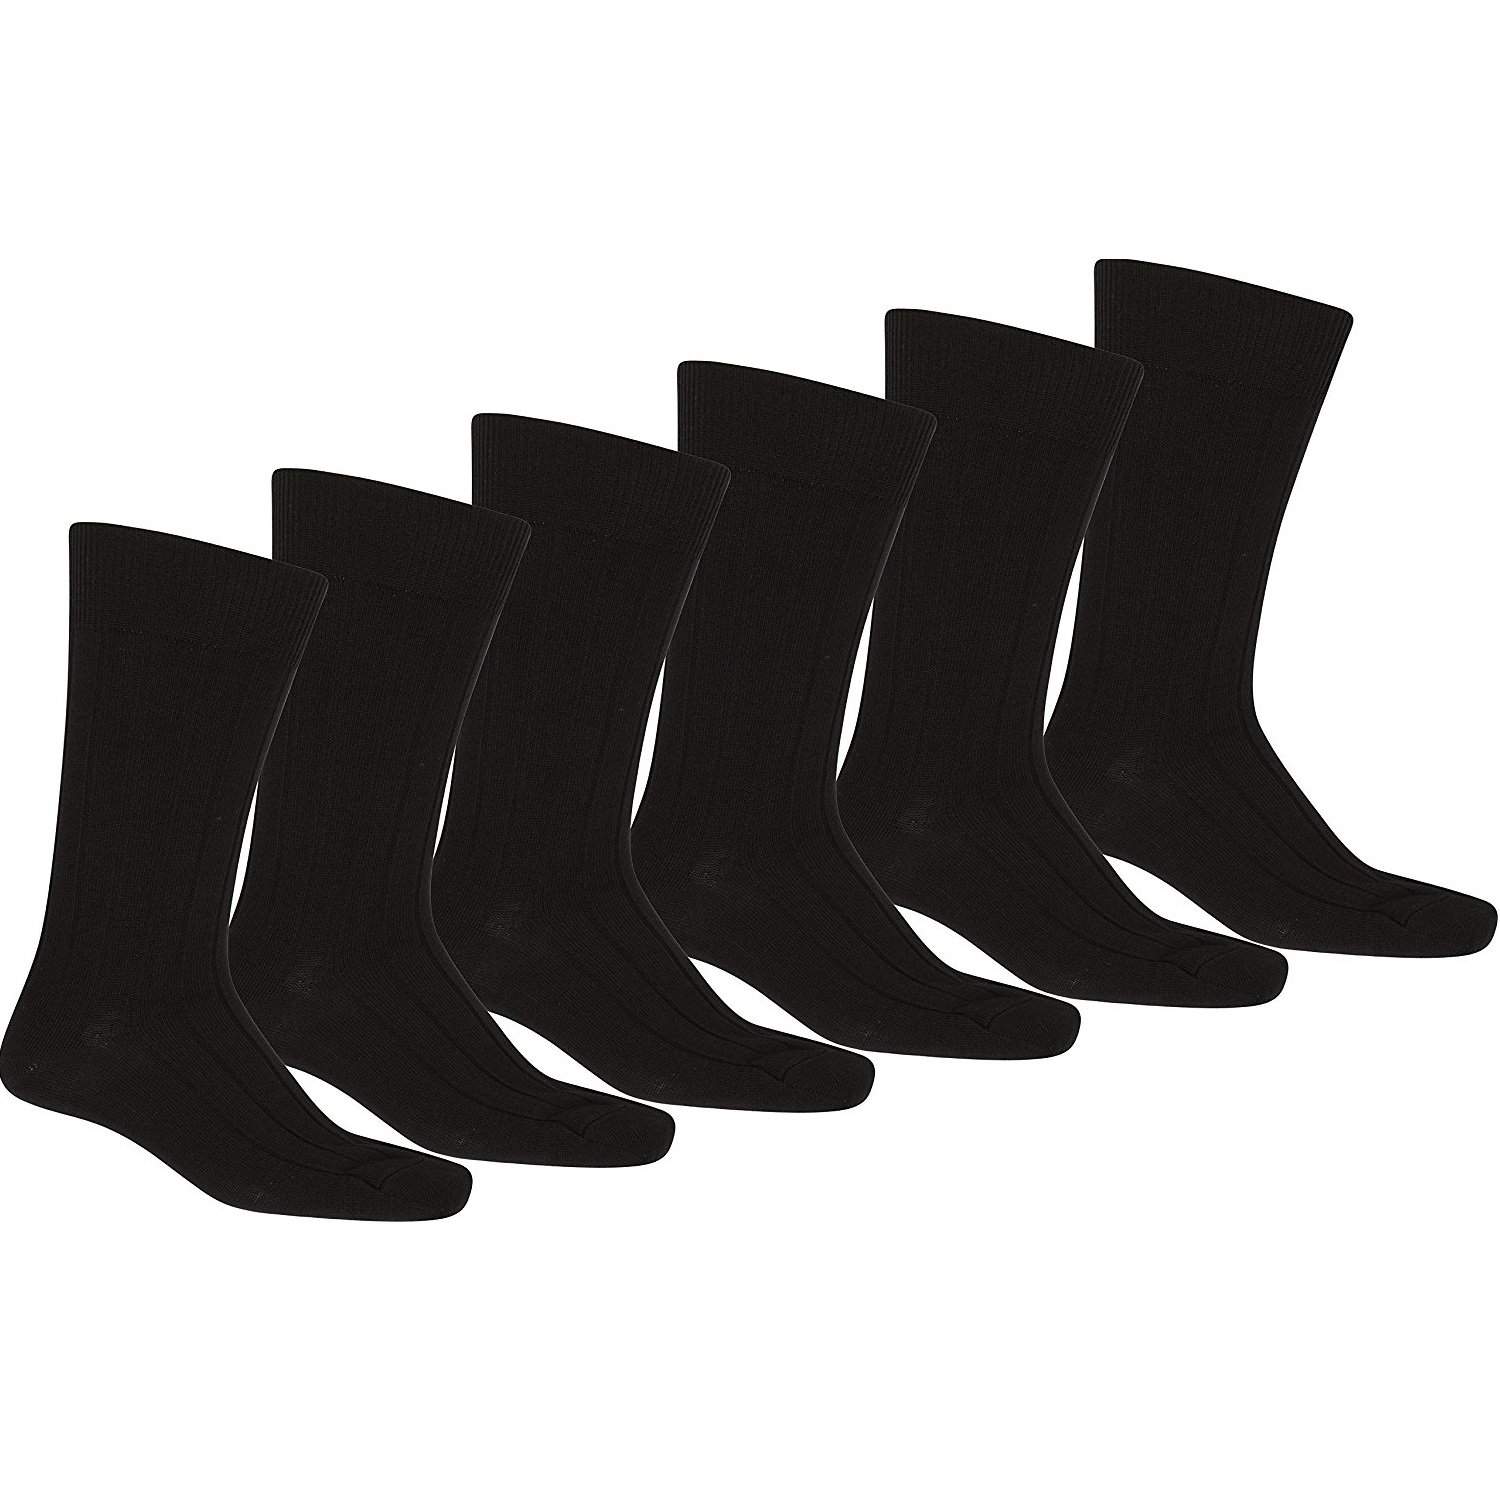 Pack of 240 Men's Solid Plain Dress Socks - Bulk Wholesale Lot